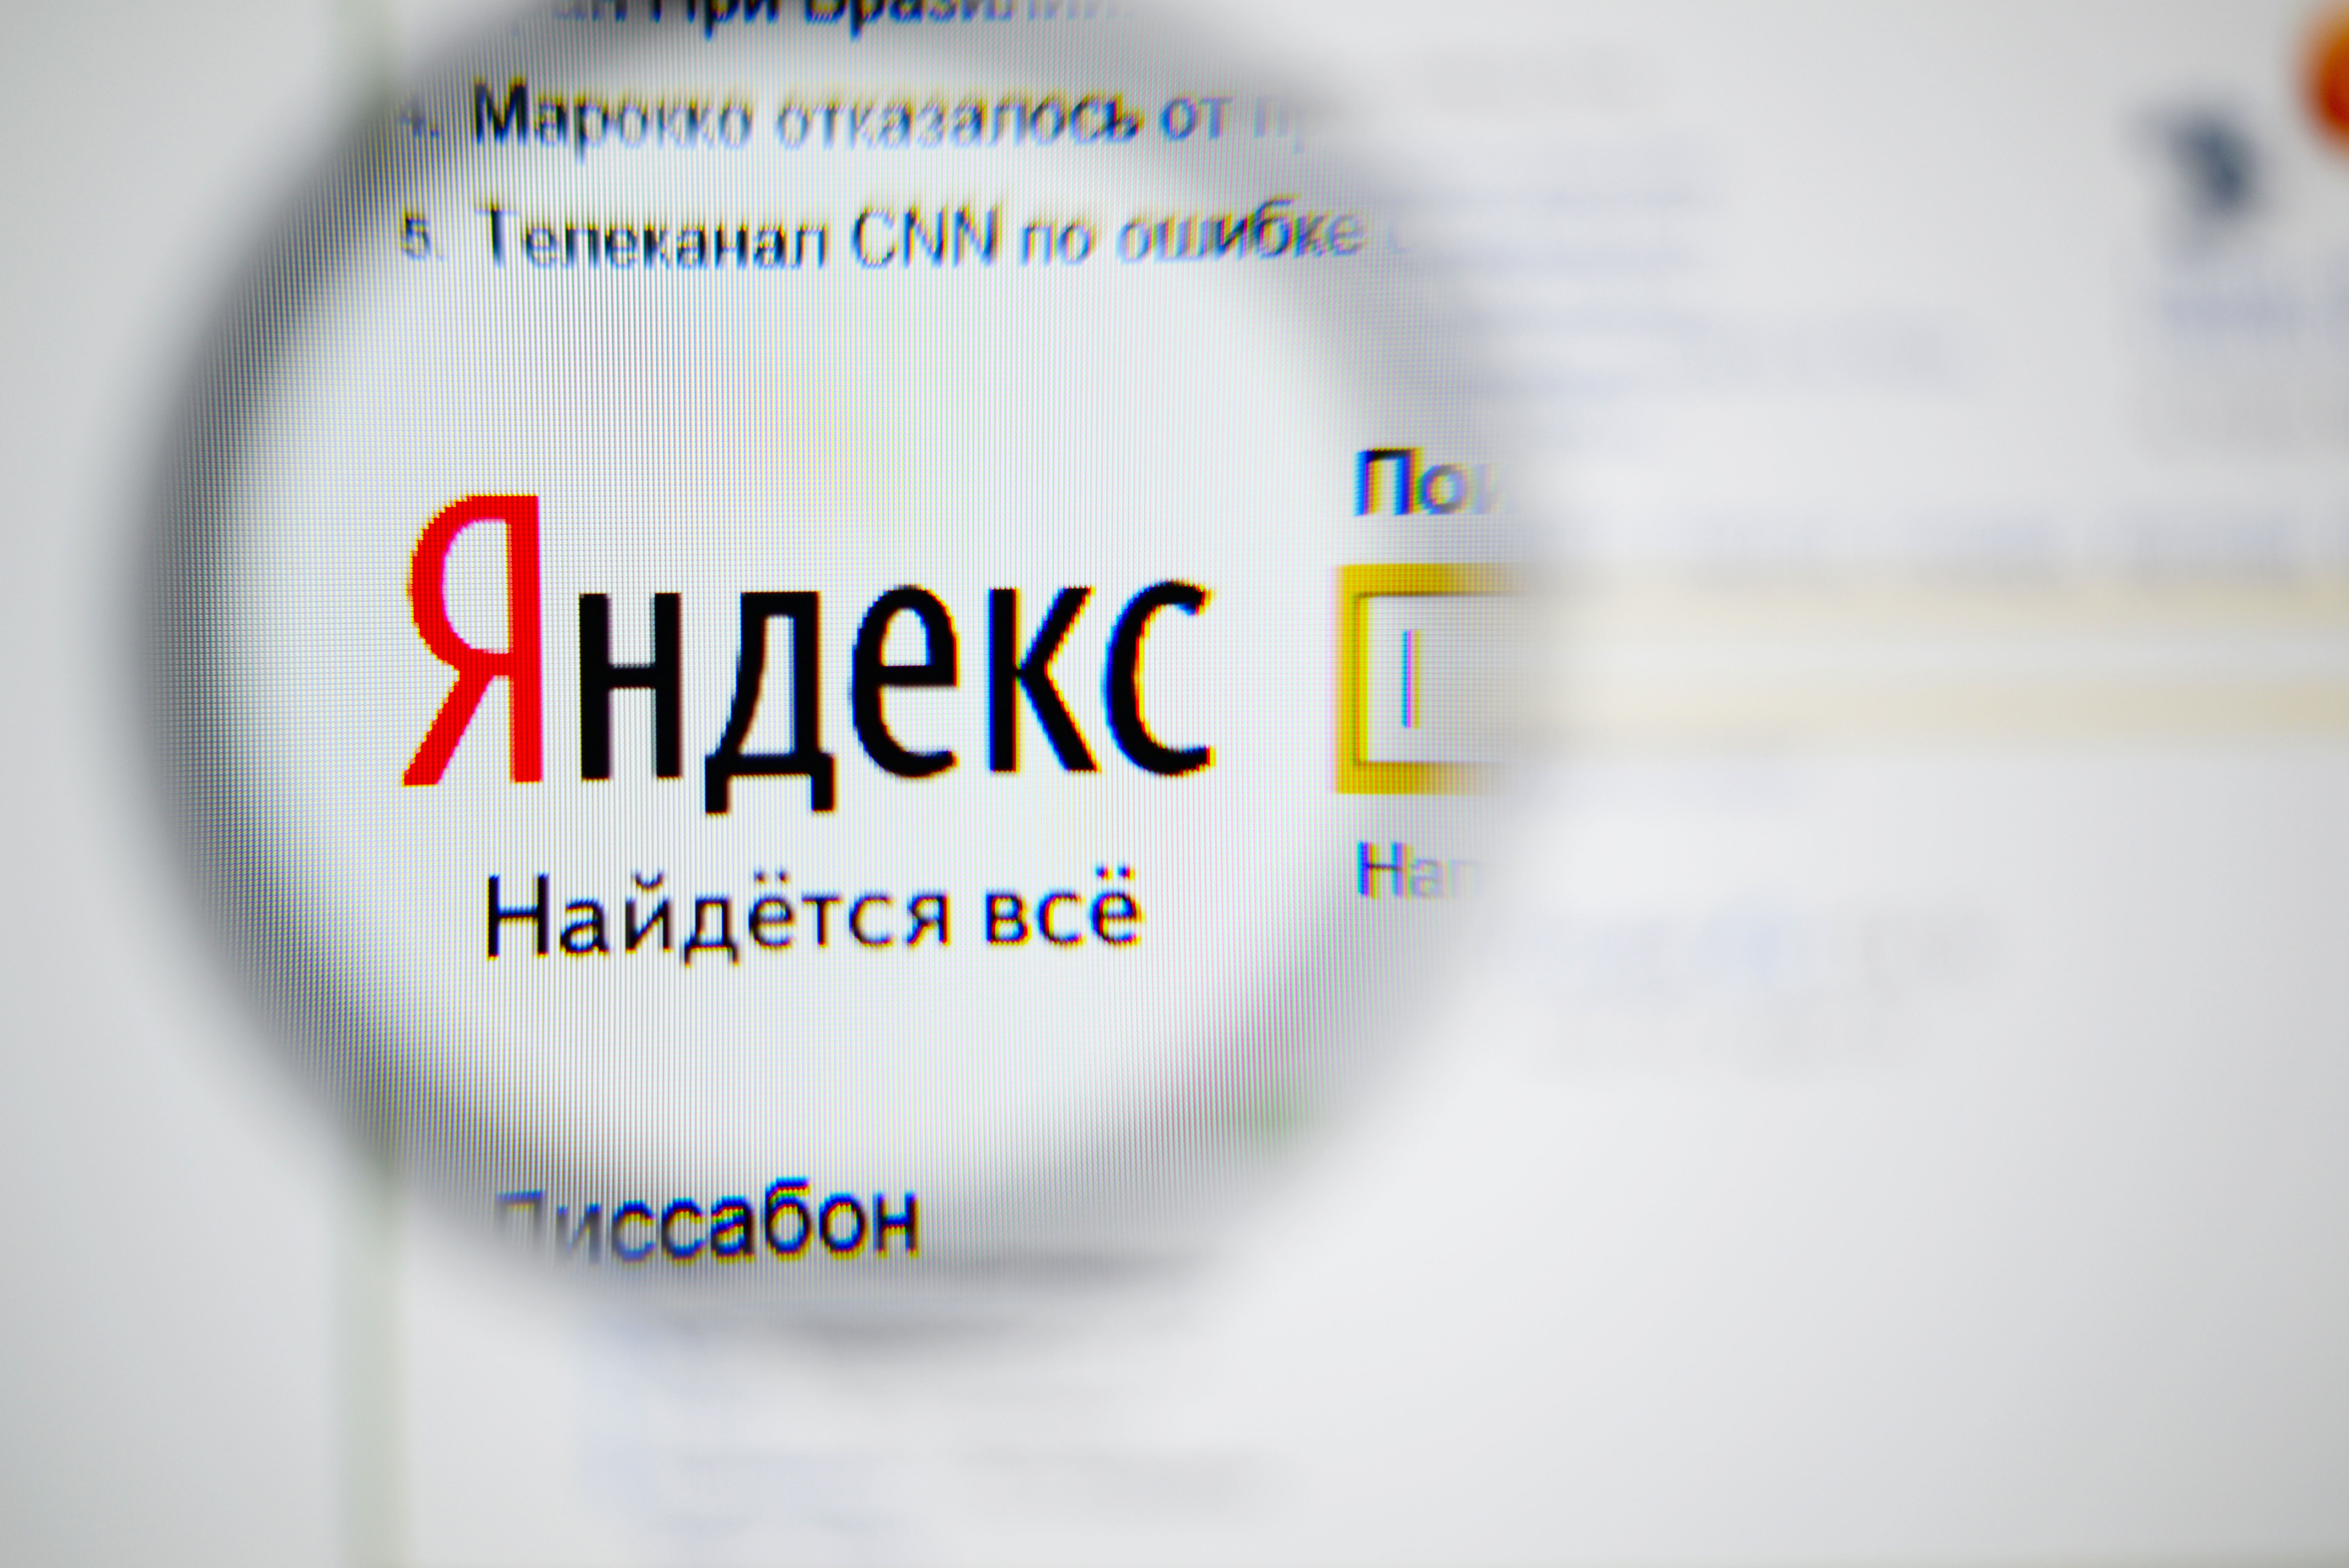 „Яндекс” и други интернет-компании критикуваха този законопроект още от момента, когато стана известно за него”, заявиха в пресслужбата на „Яндекс“ пред „Руски дневник“. По същество на оператори в мрежата се предоставят функциите и на съд, и на правозащитни органи, които те не могат да упражняват по принцип.